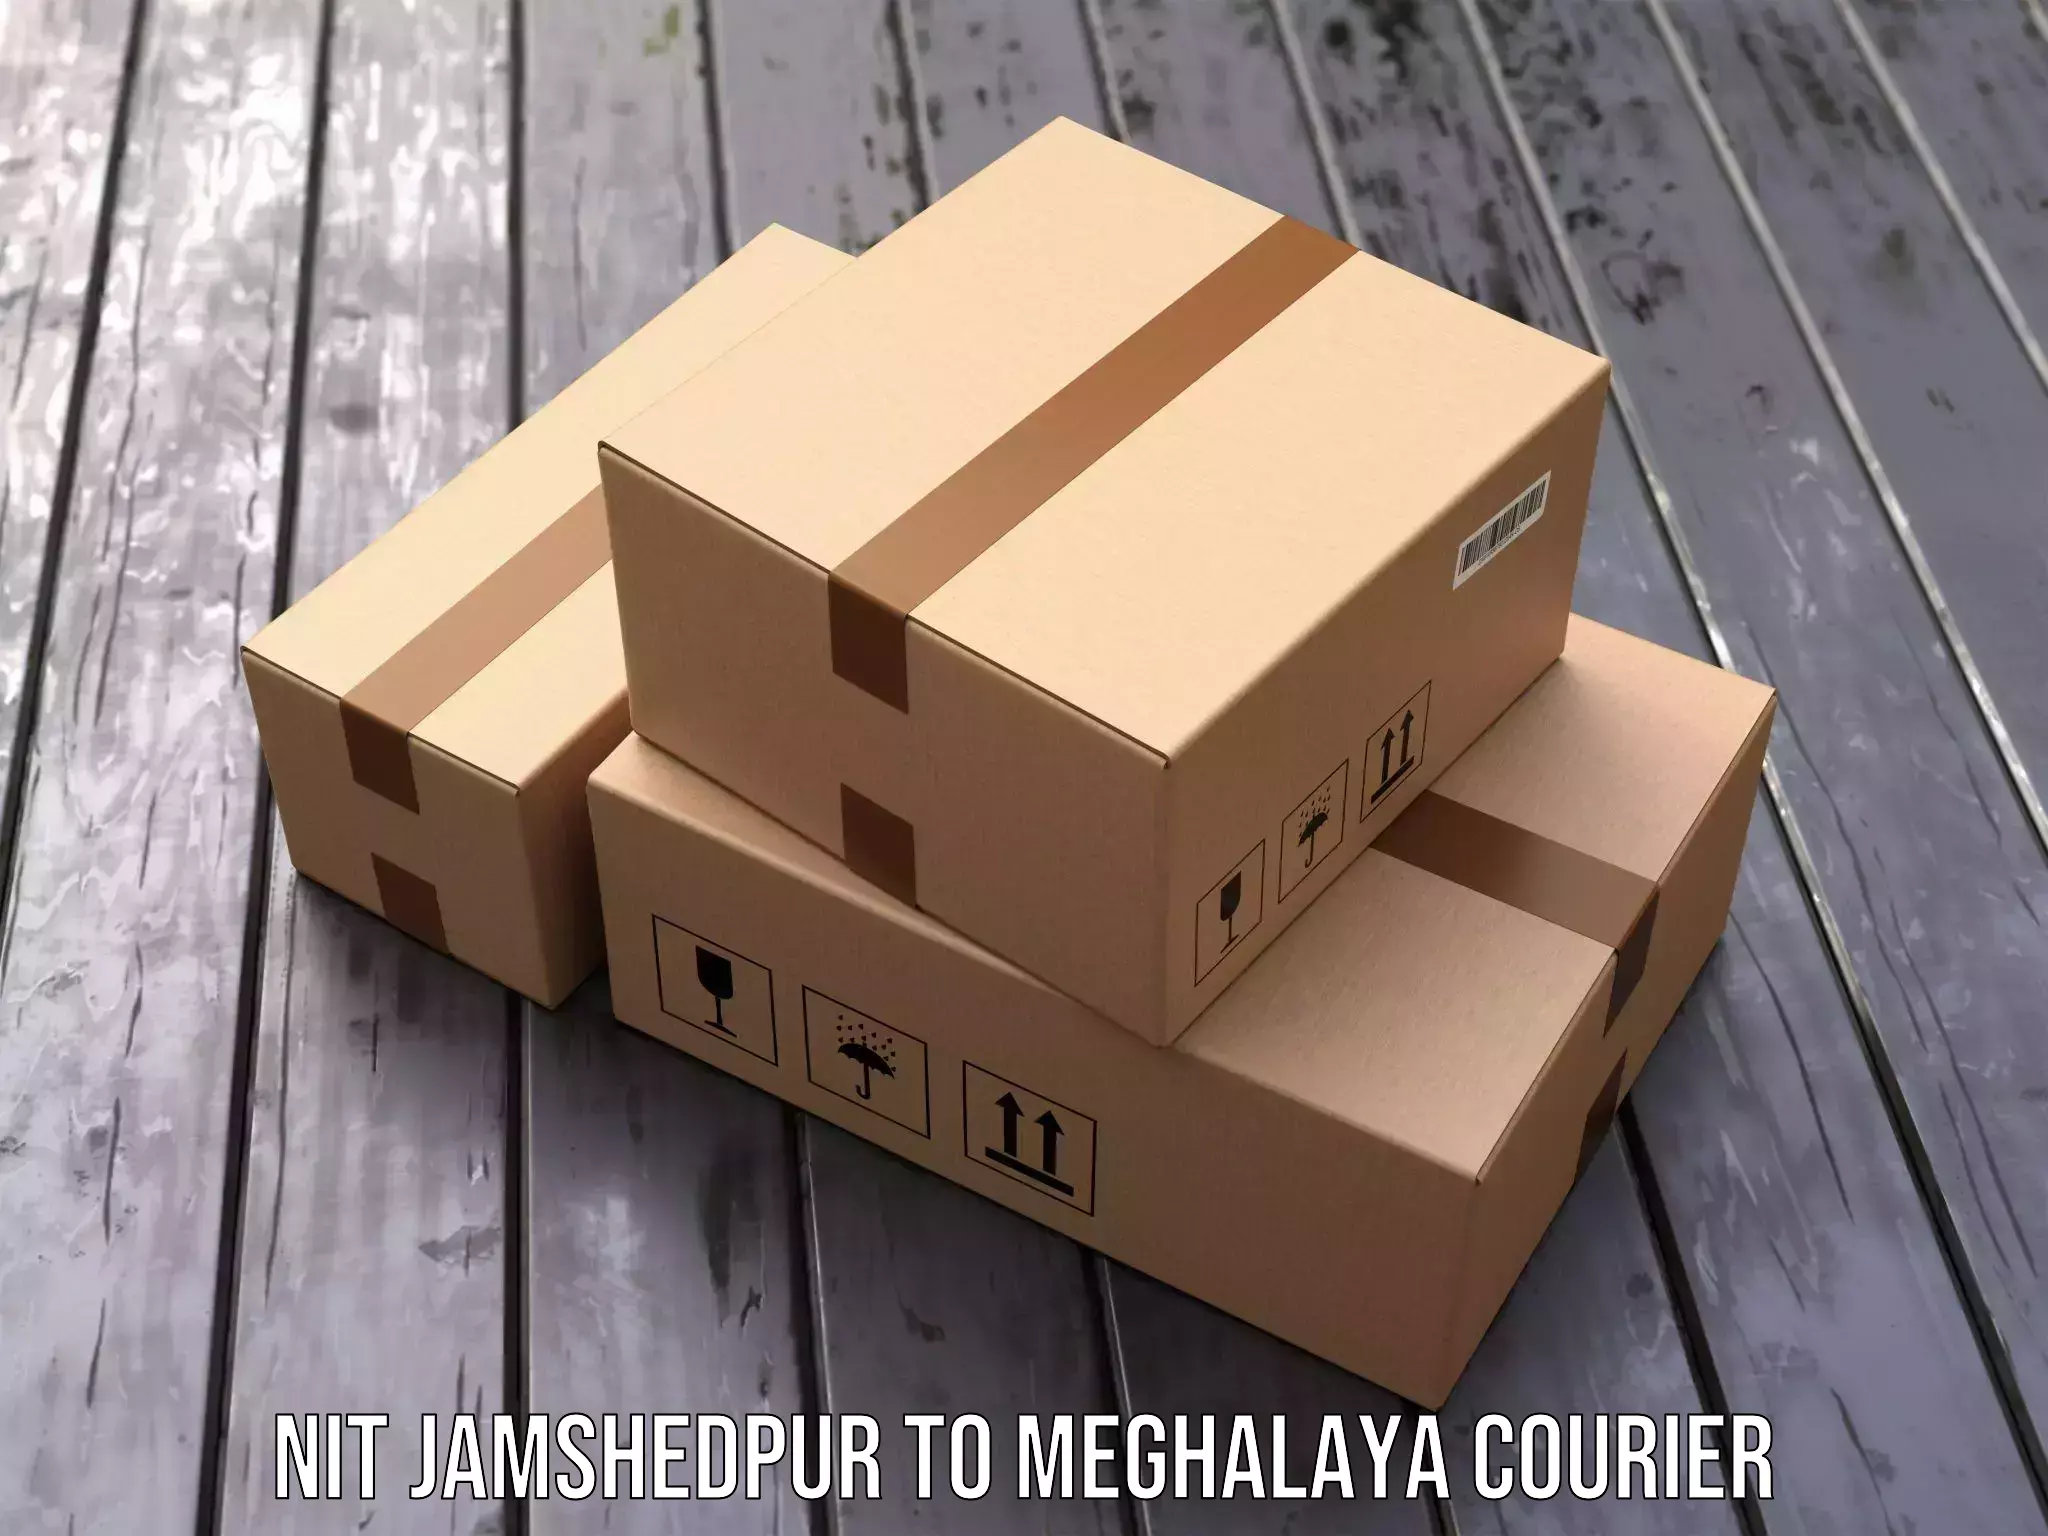 Cash on delivery service NIT Jamshedpur to Williamnagar